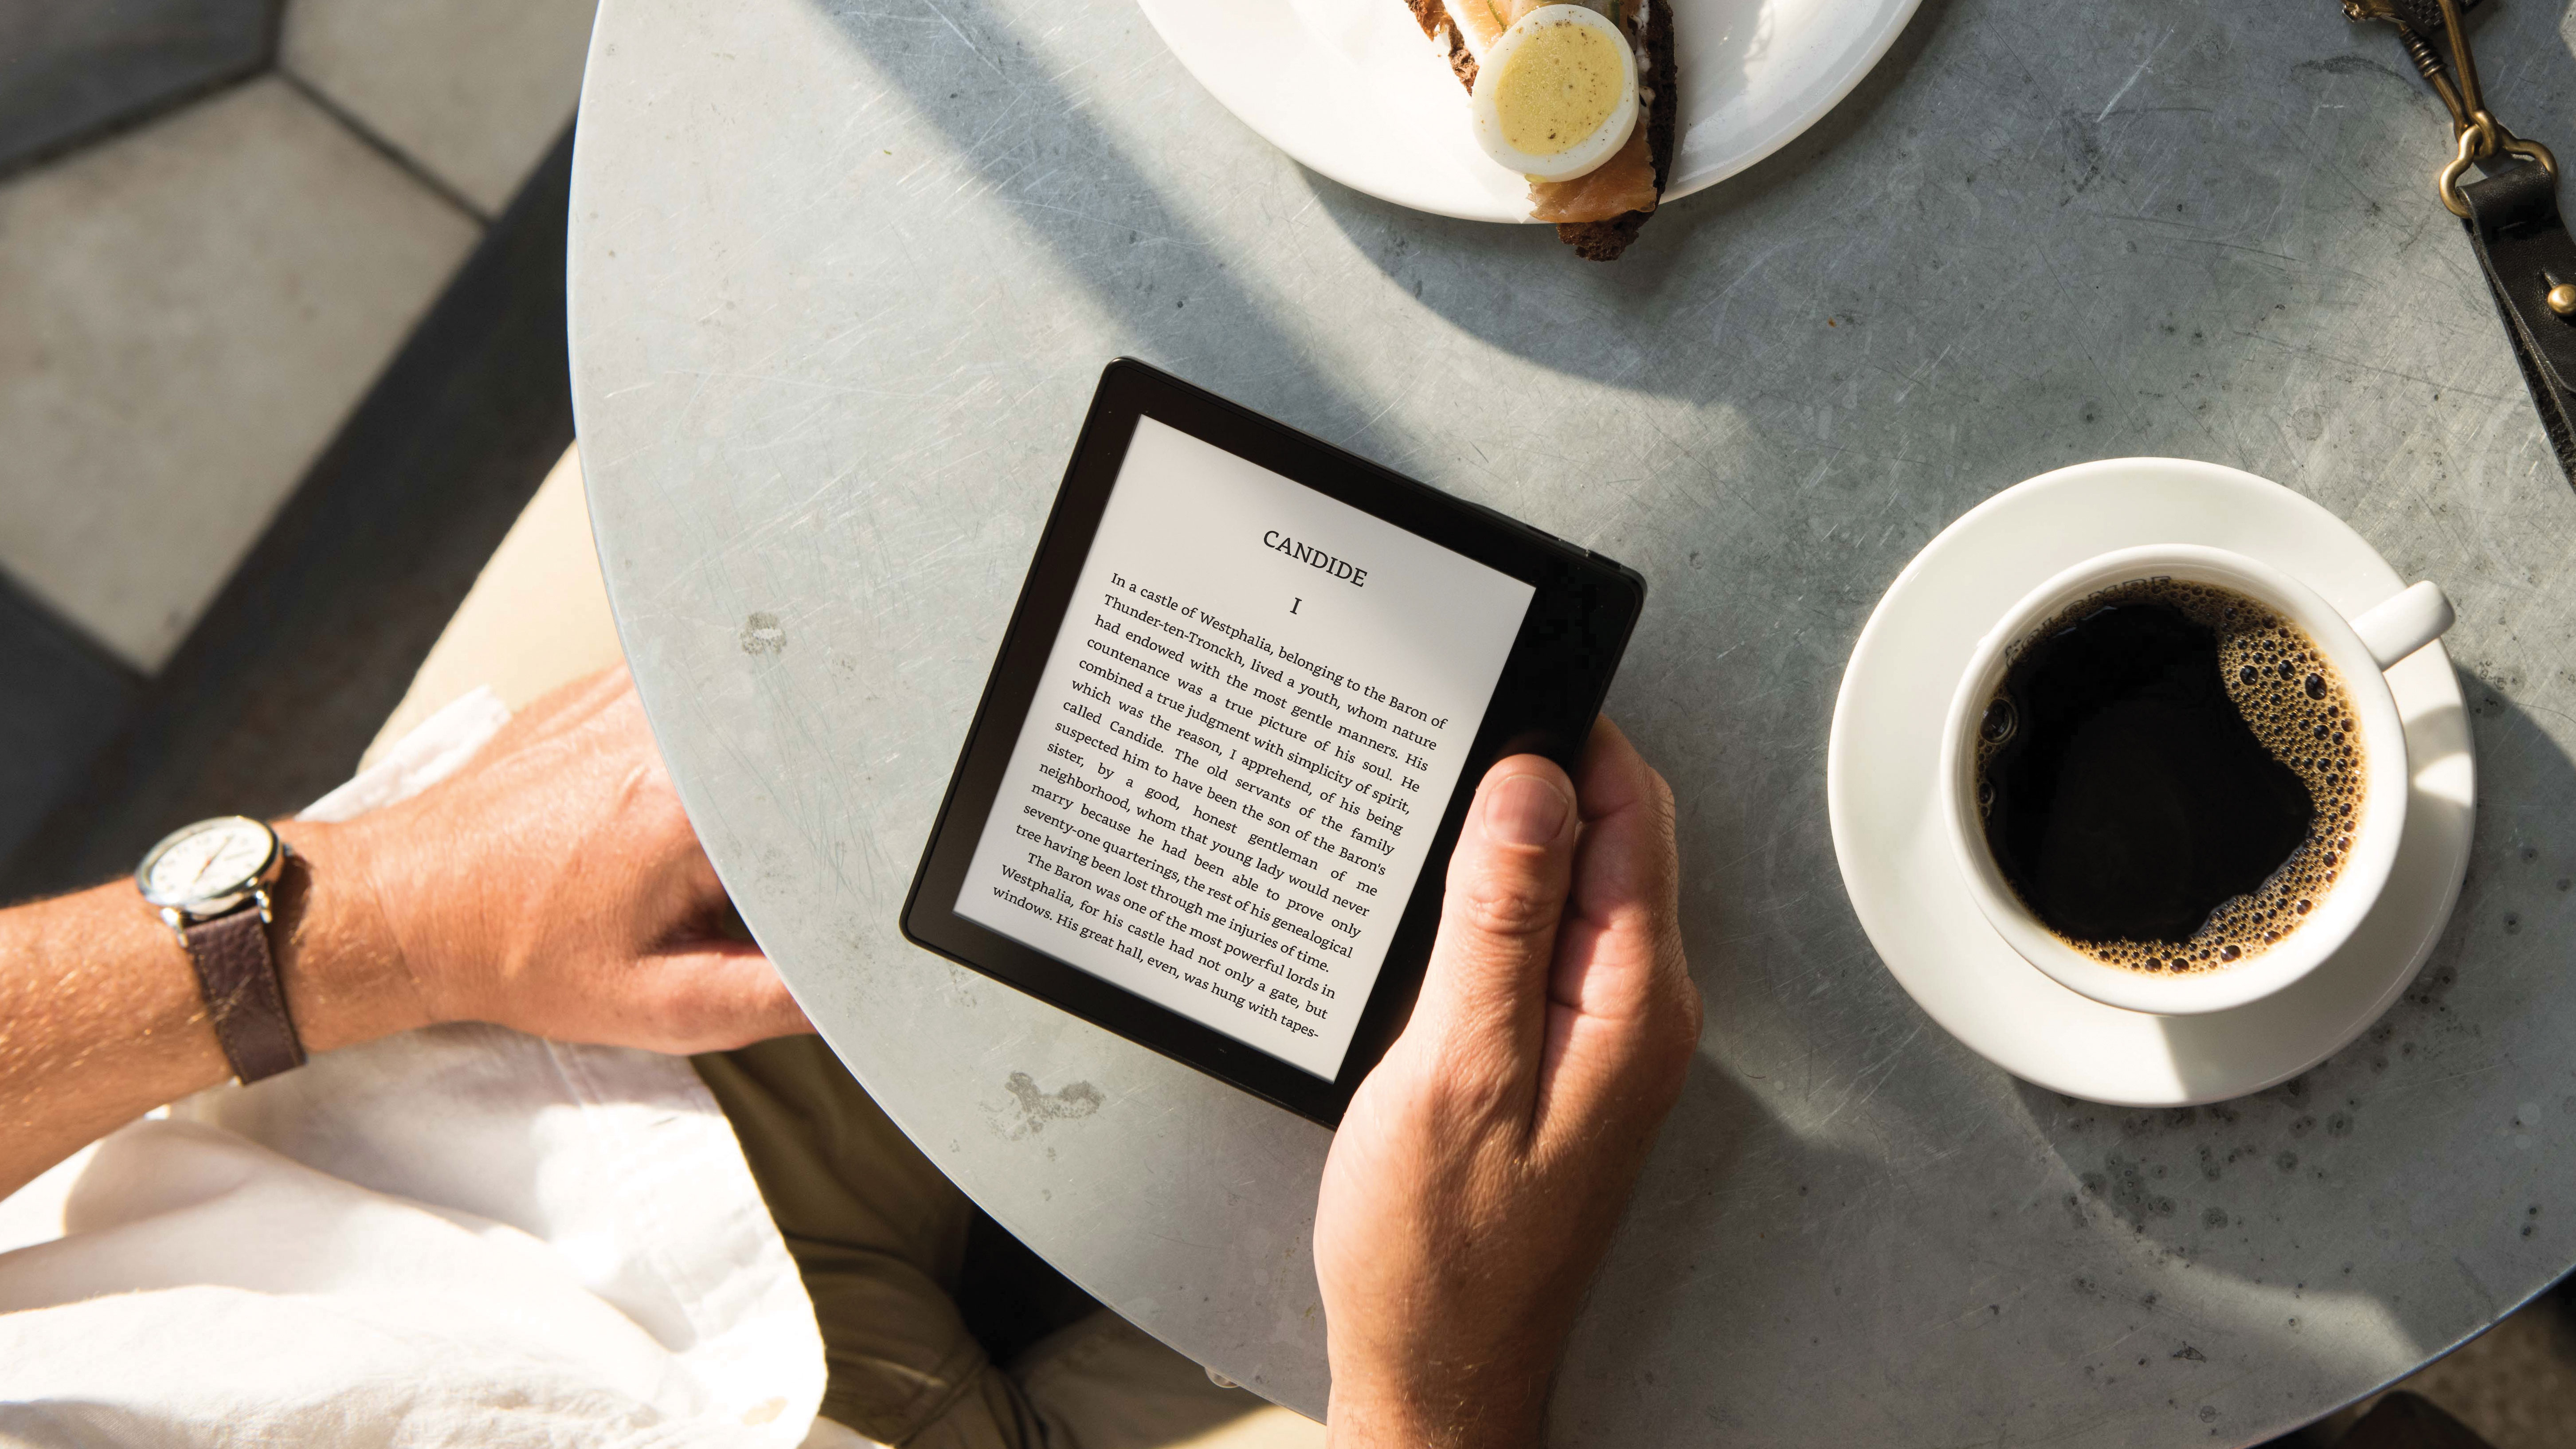 The Kindle Оазис читается, когда кто-то пьет кофе за столом